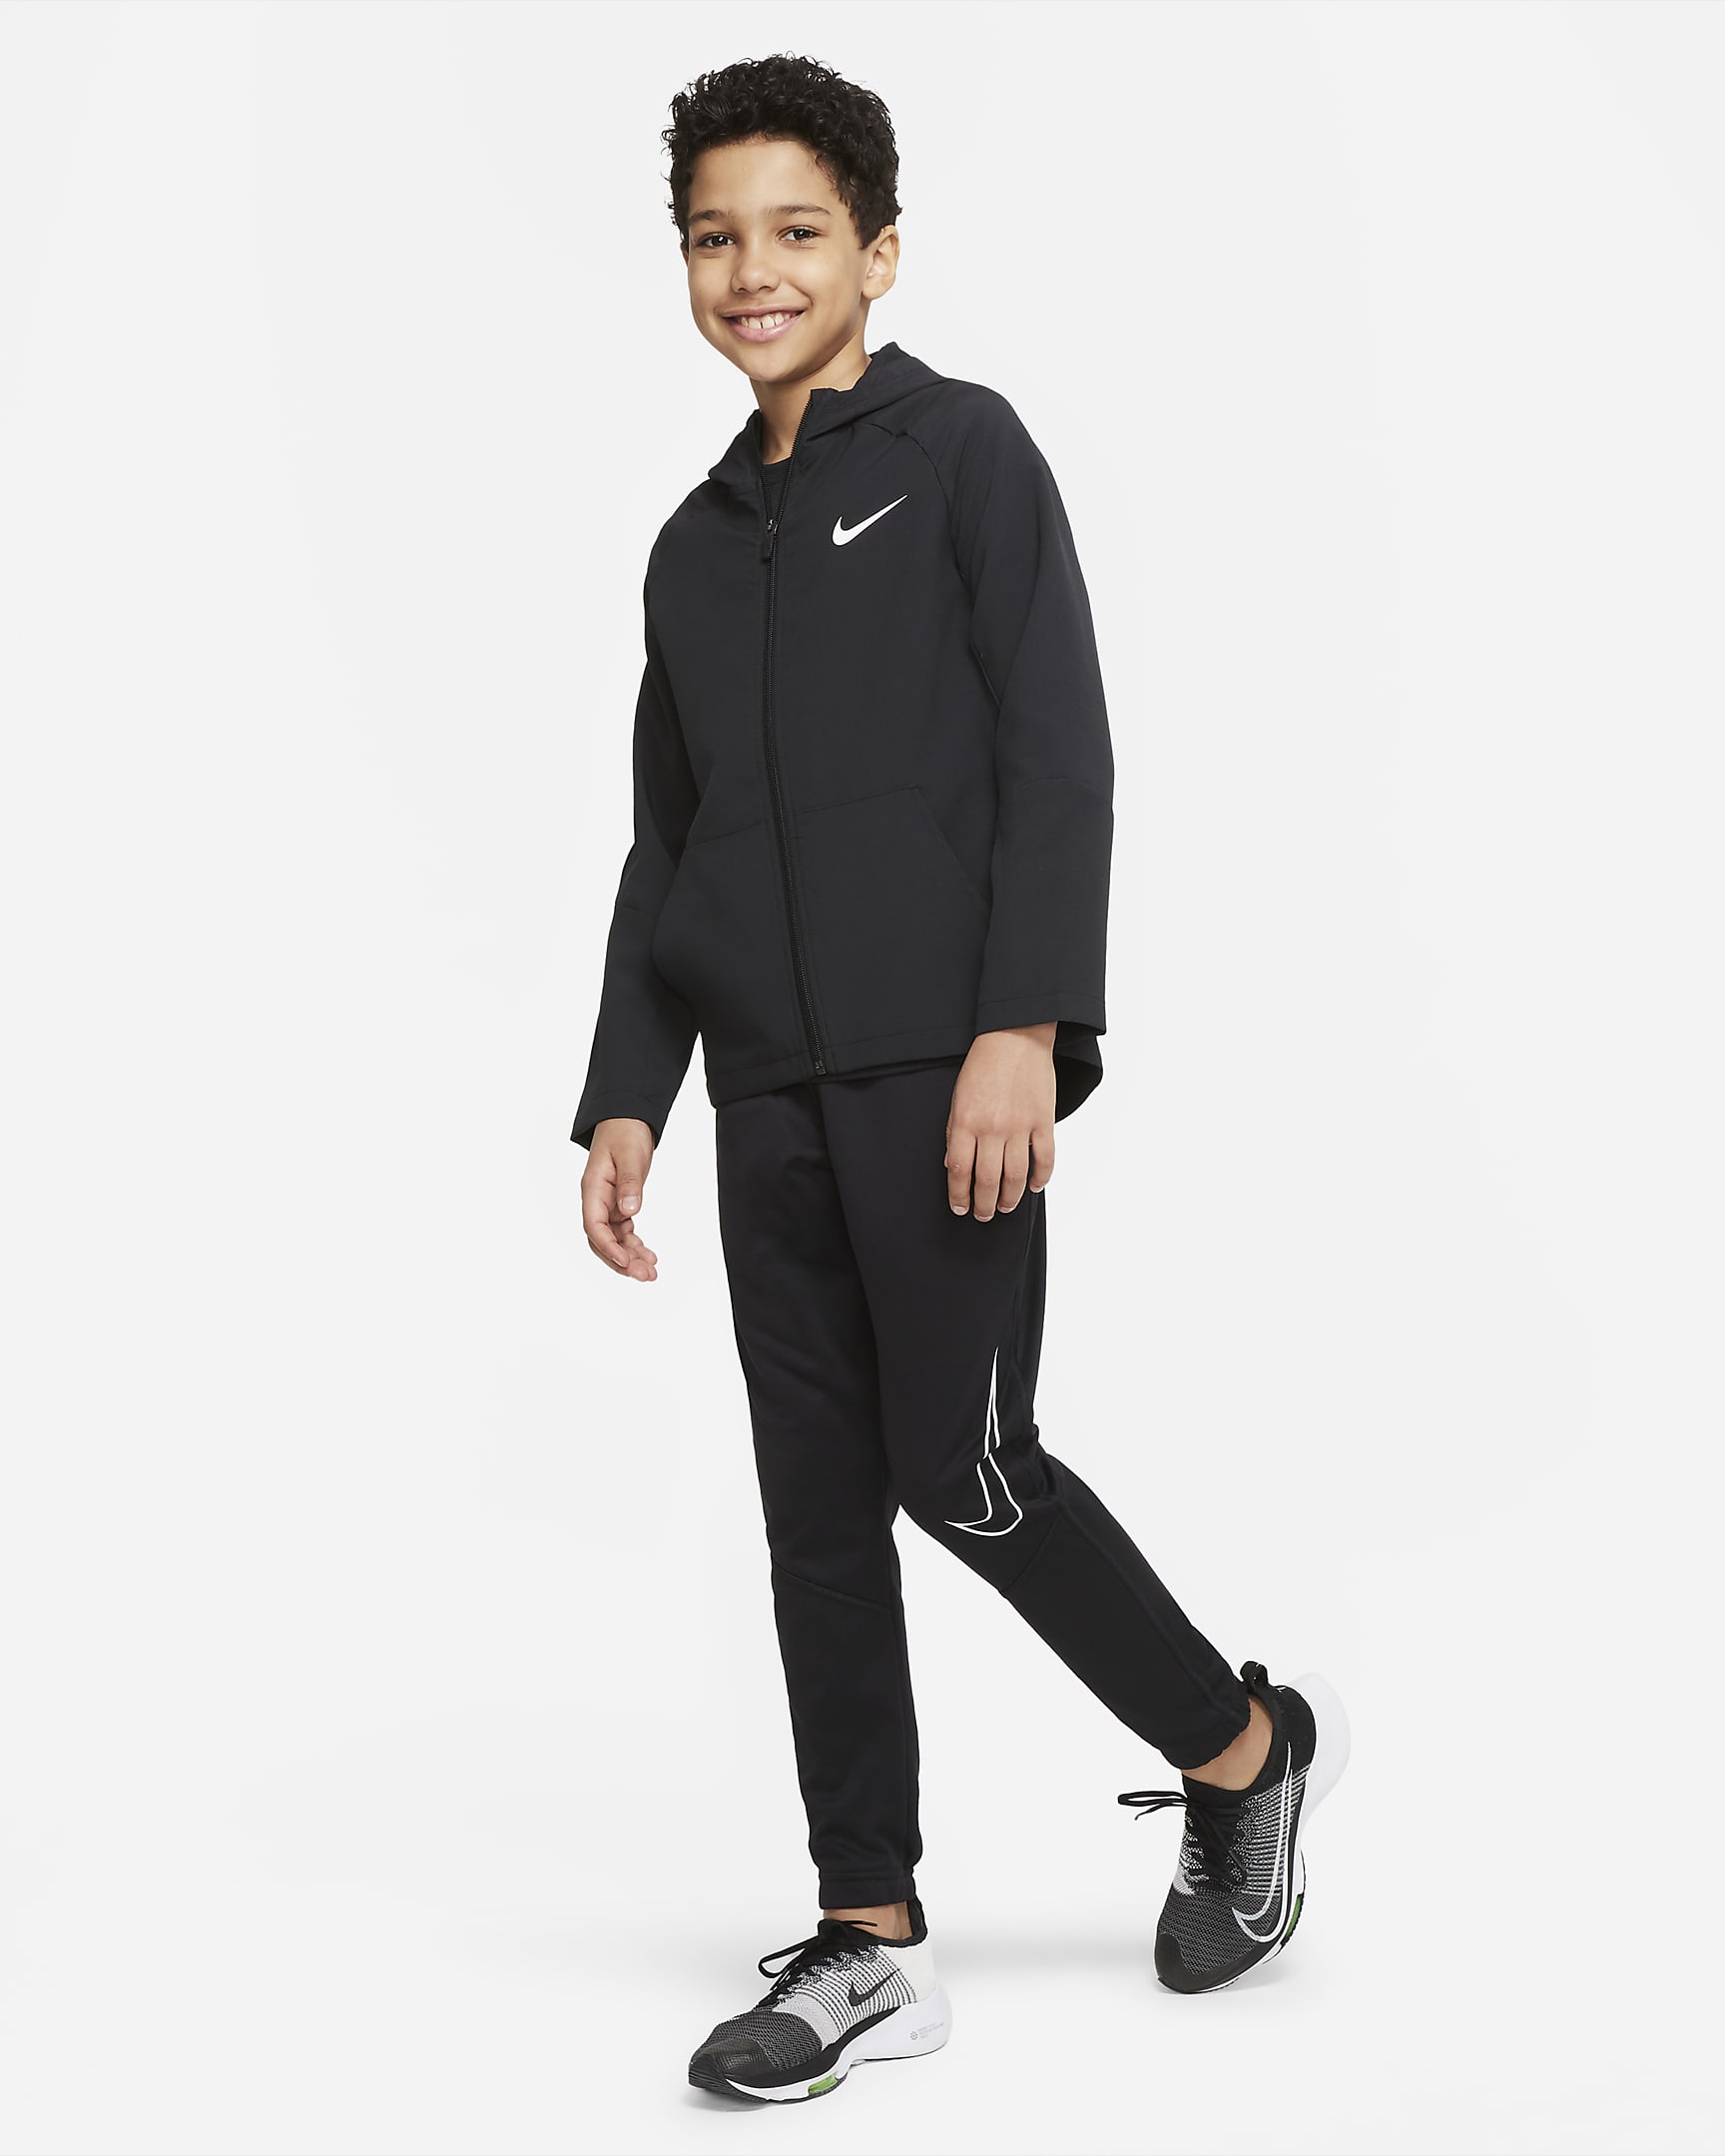 Veste de training tissée Nike Dri-FIT pour Garçon plus âgé - Noir/Noir/Noir/Blanc